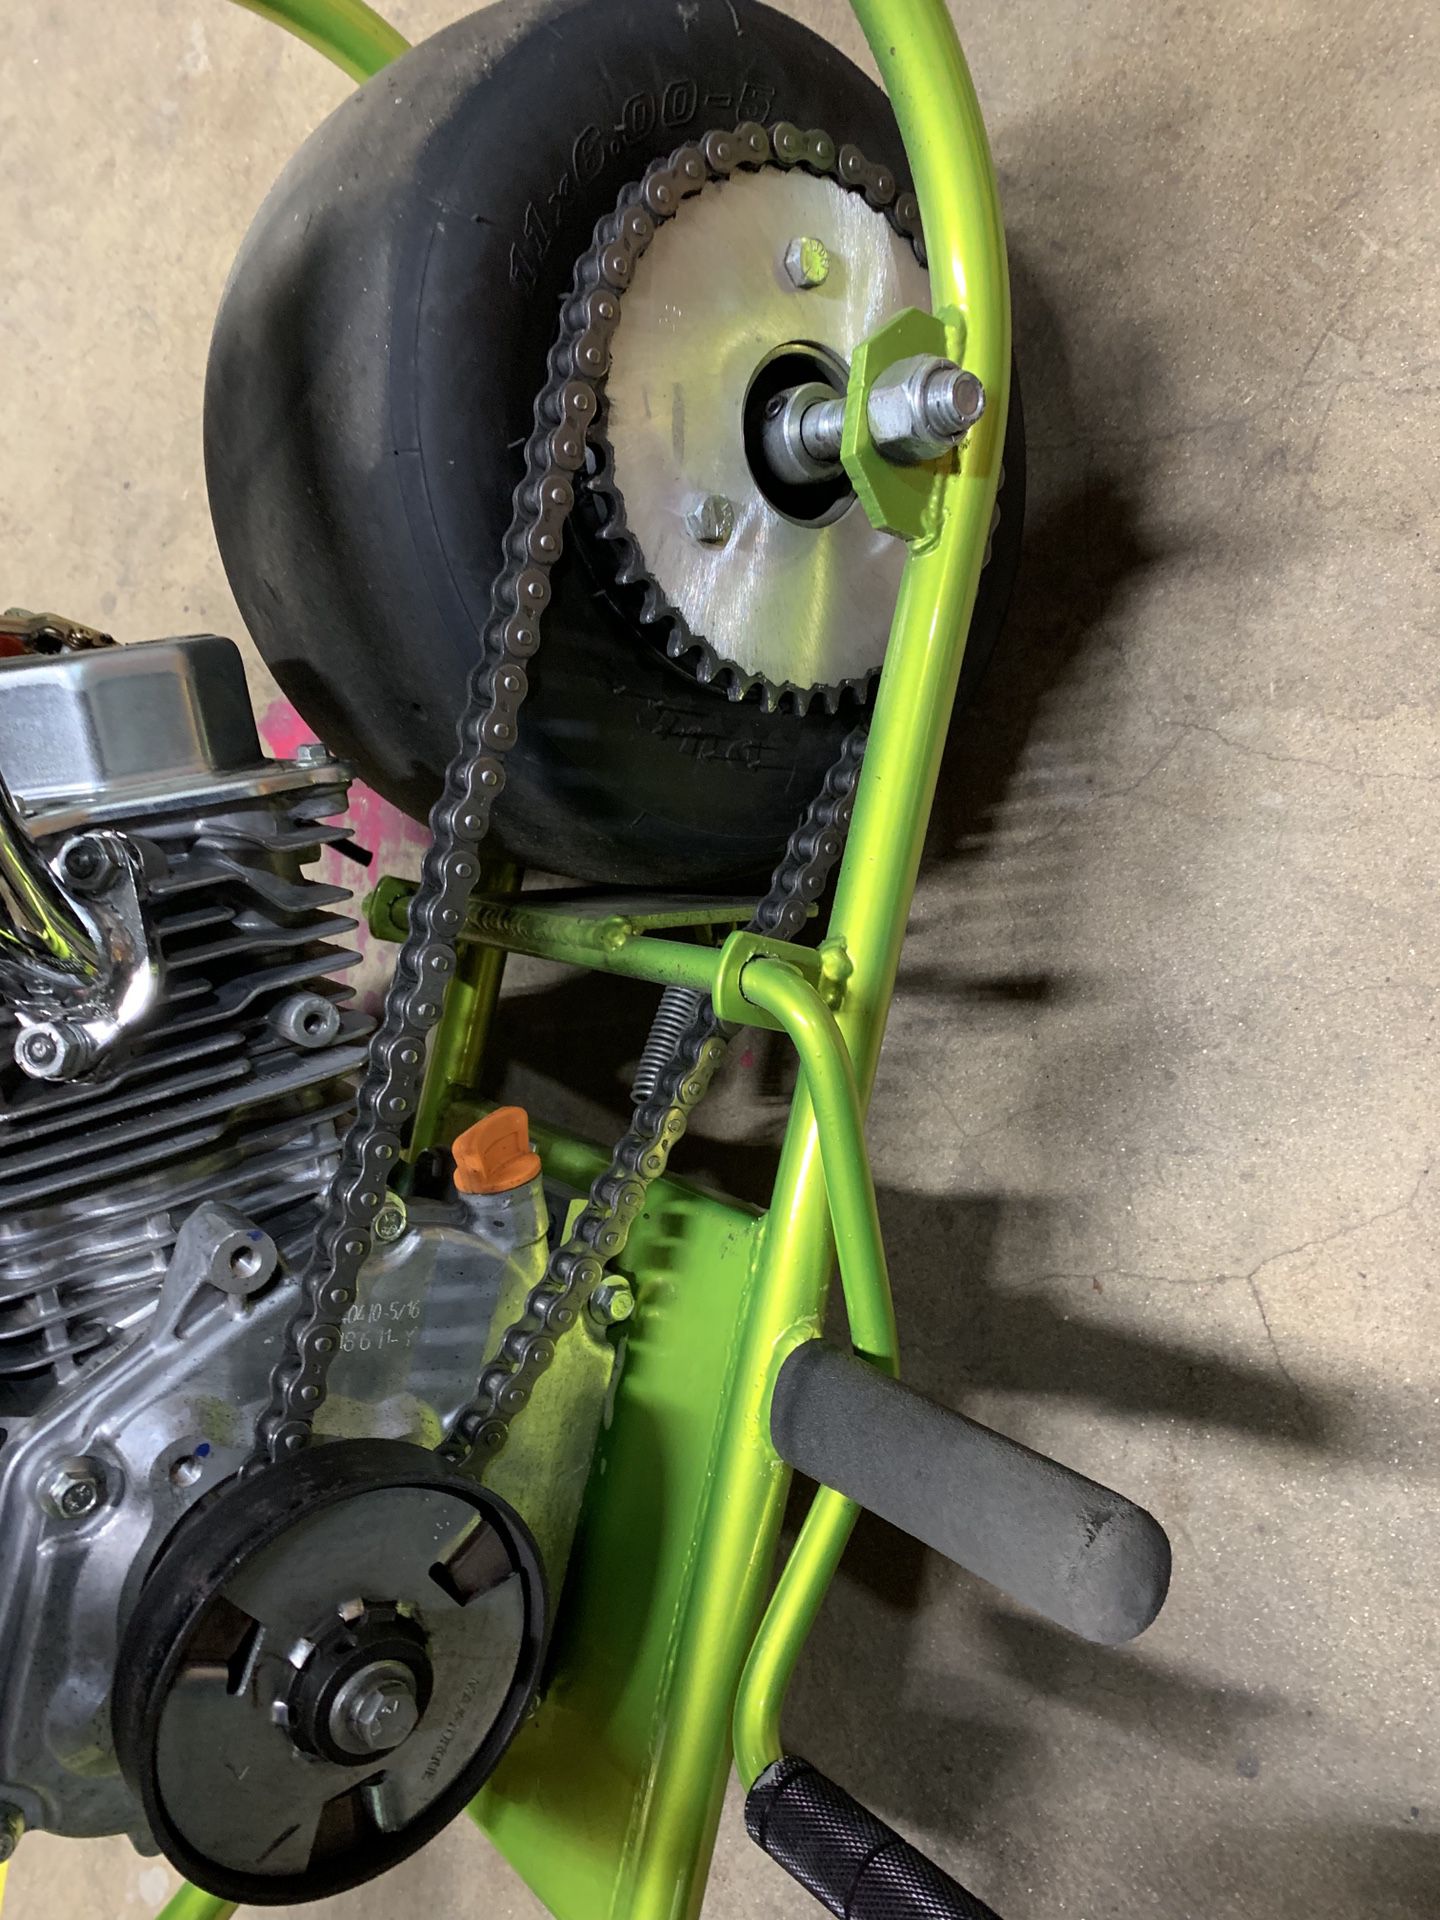 Mini bike sprocket, chain, and clutch